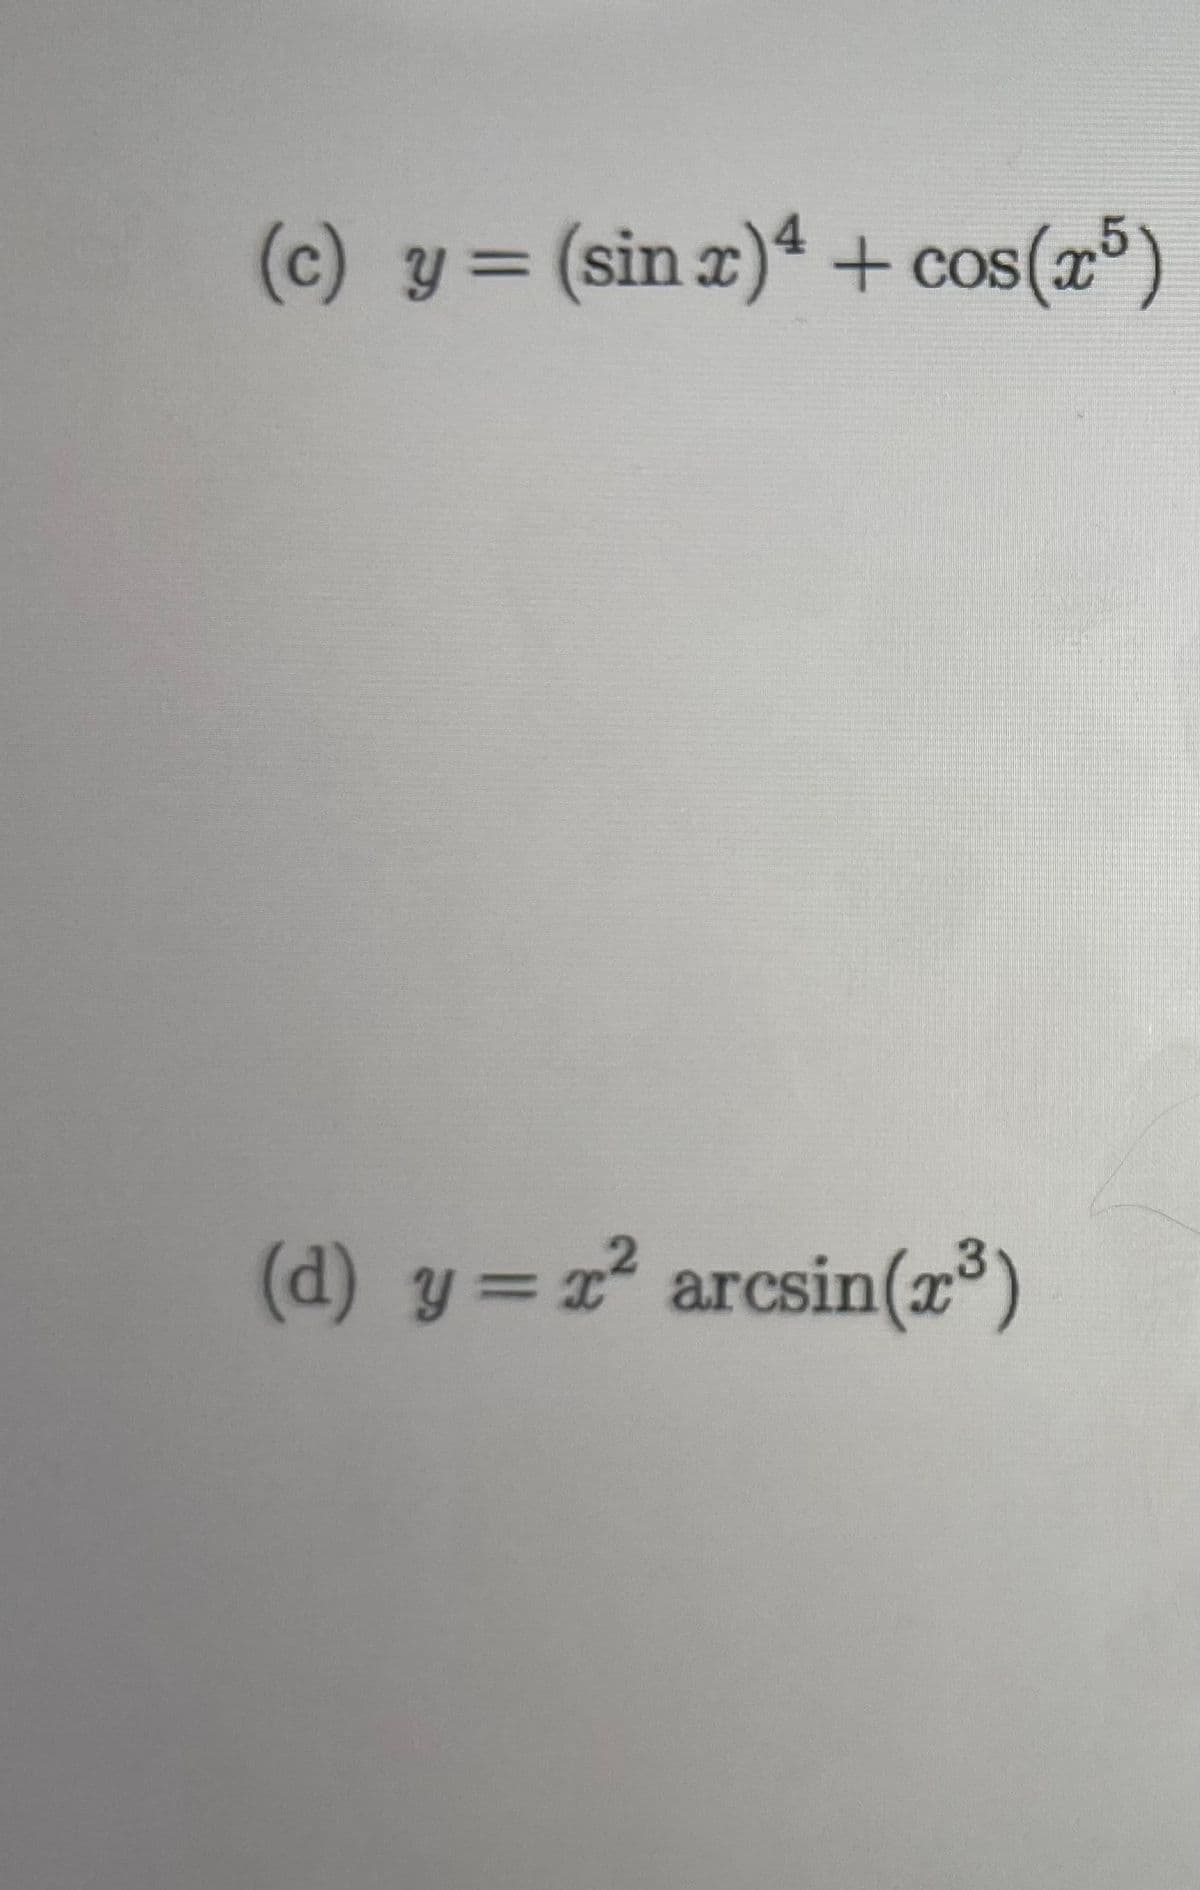 (c) y = (sin x) 4 + cos(x5)
(d) y = r² arcsin(x³)